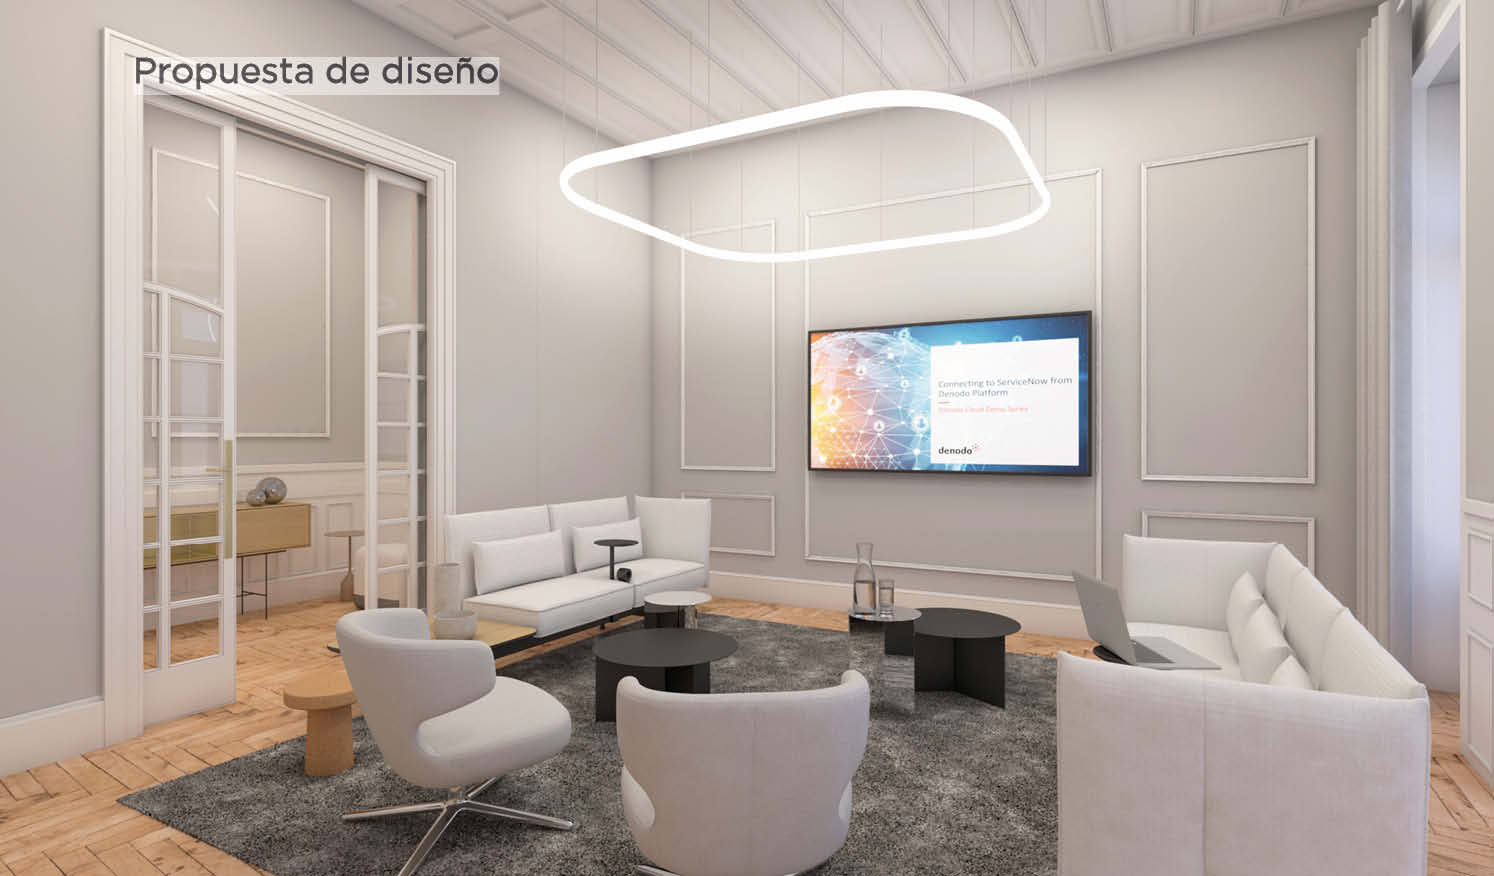 Denodo_Render propuesta de diseño sala de espera